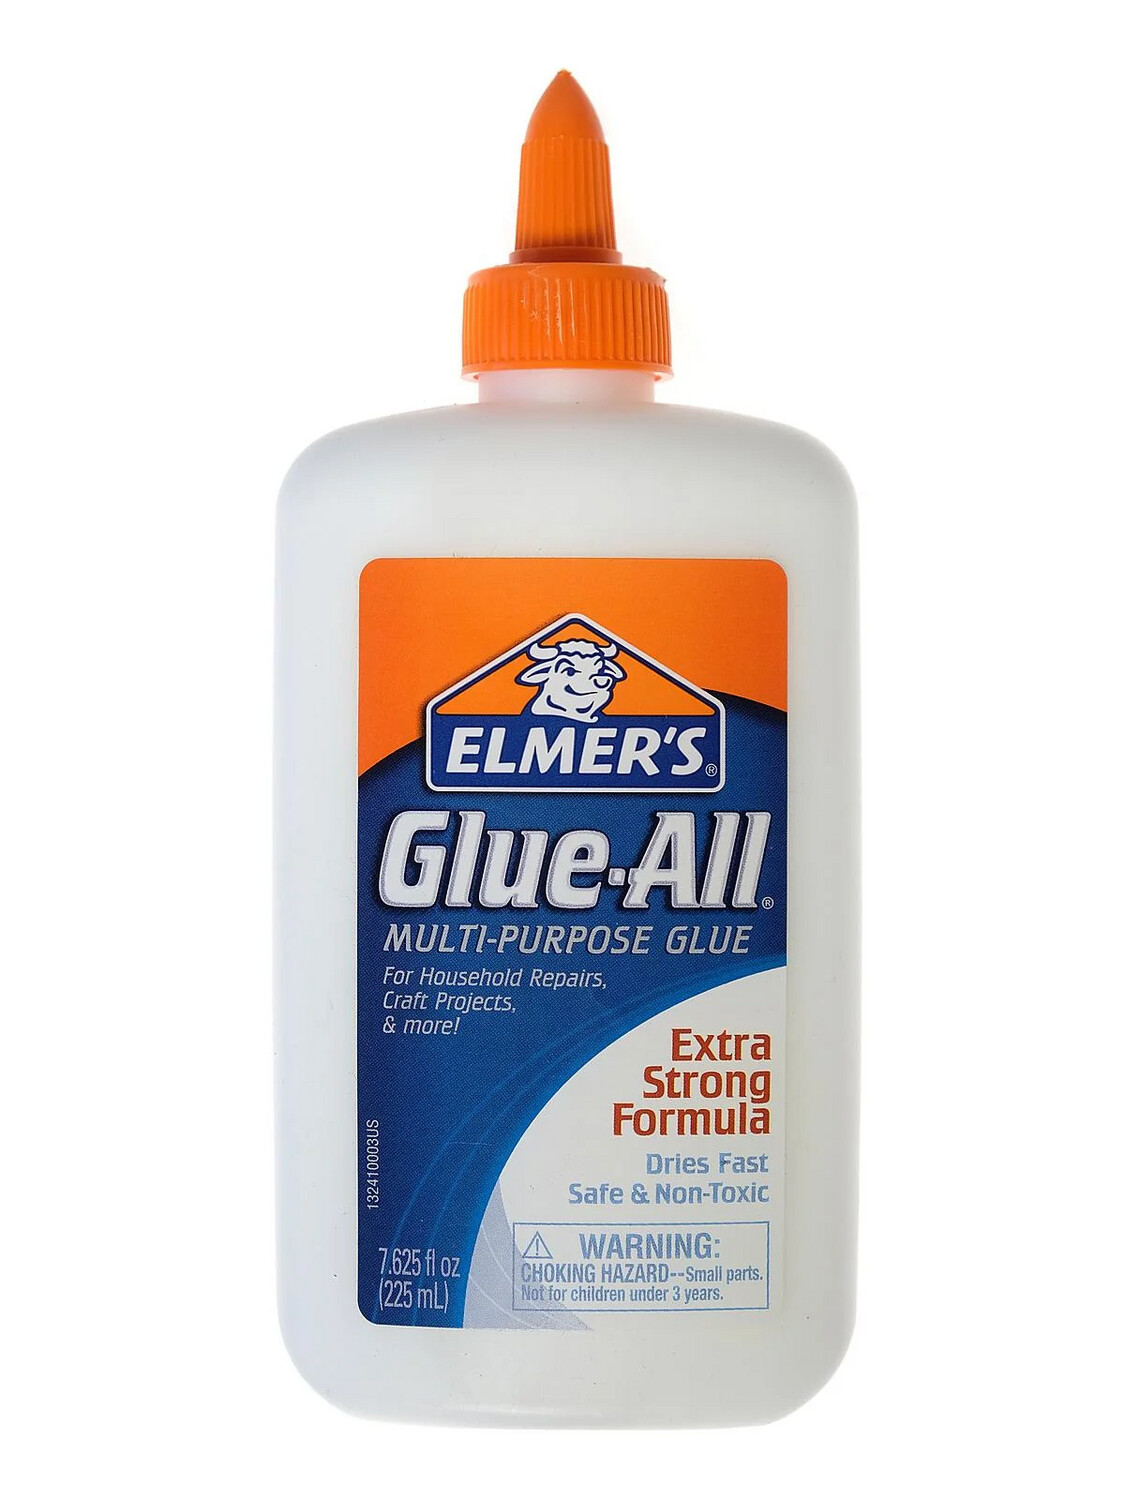 Elmer's School Glue, 7 5/8 oz.